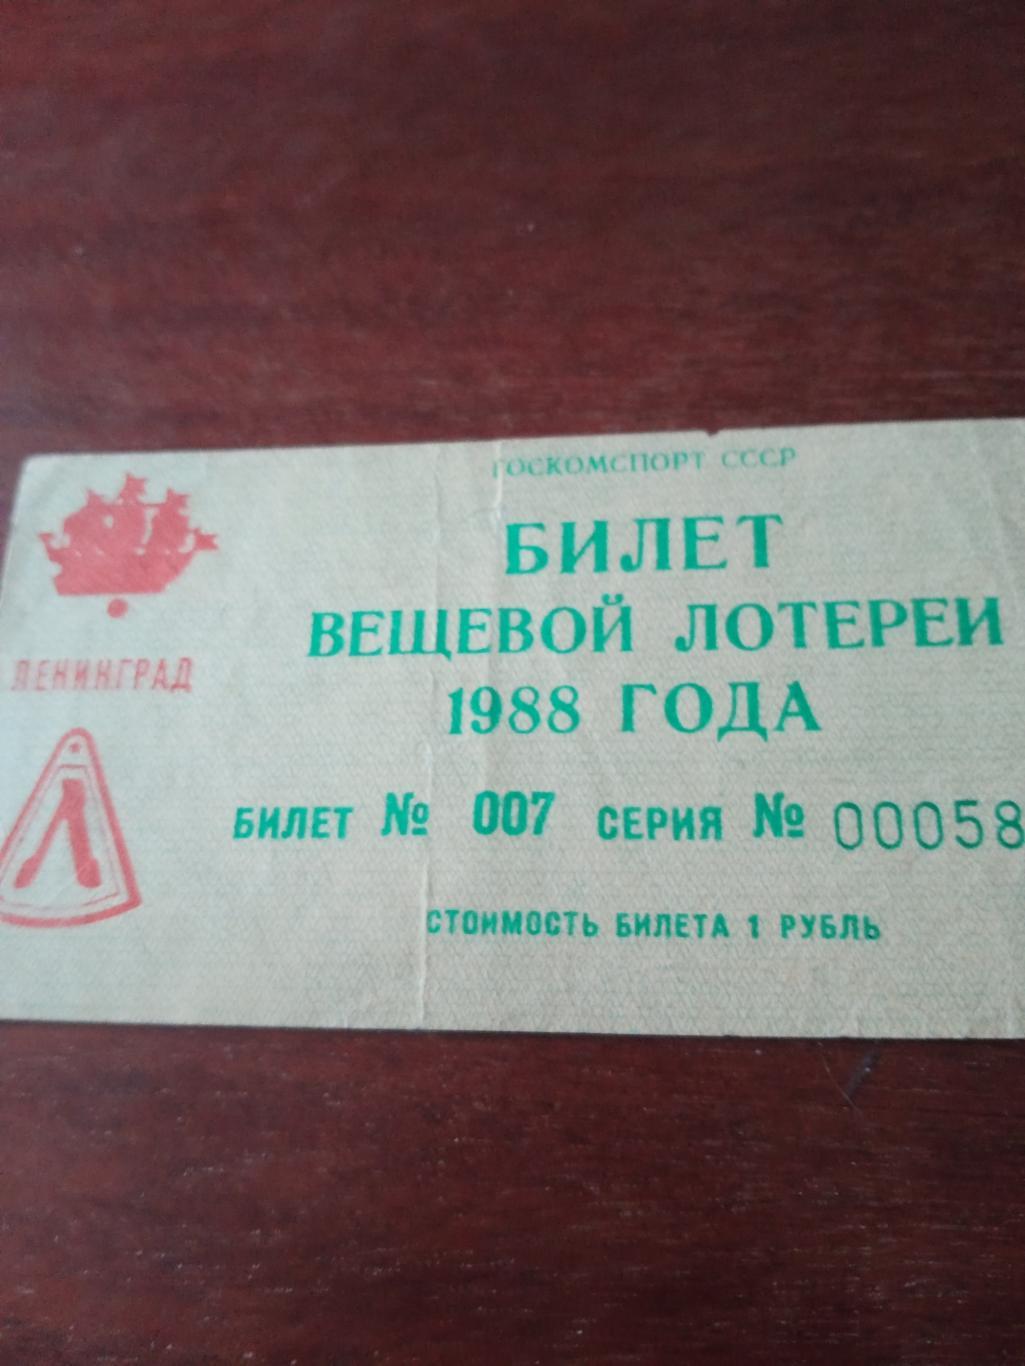 Билет спортивной лотереи - на футболе. Ленинград. 1988 год